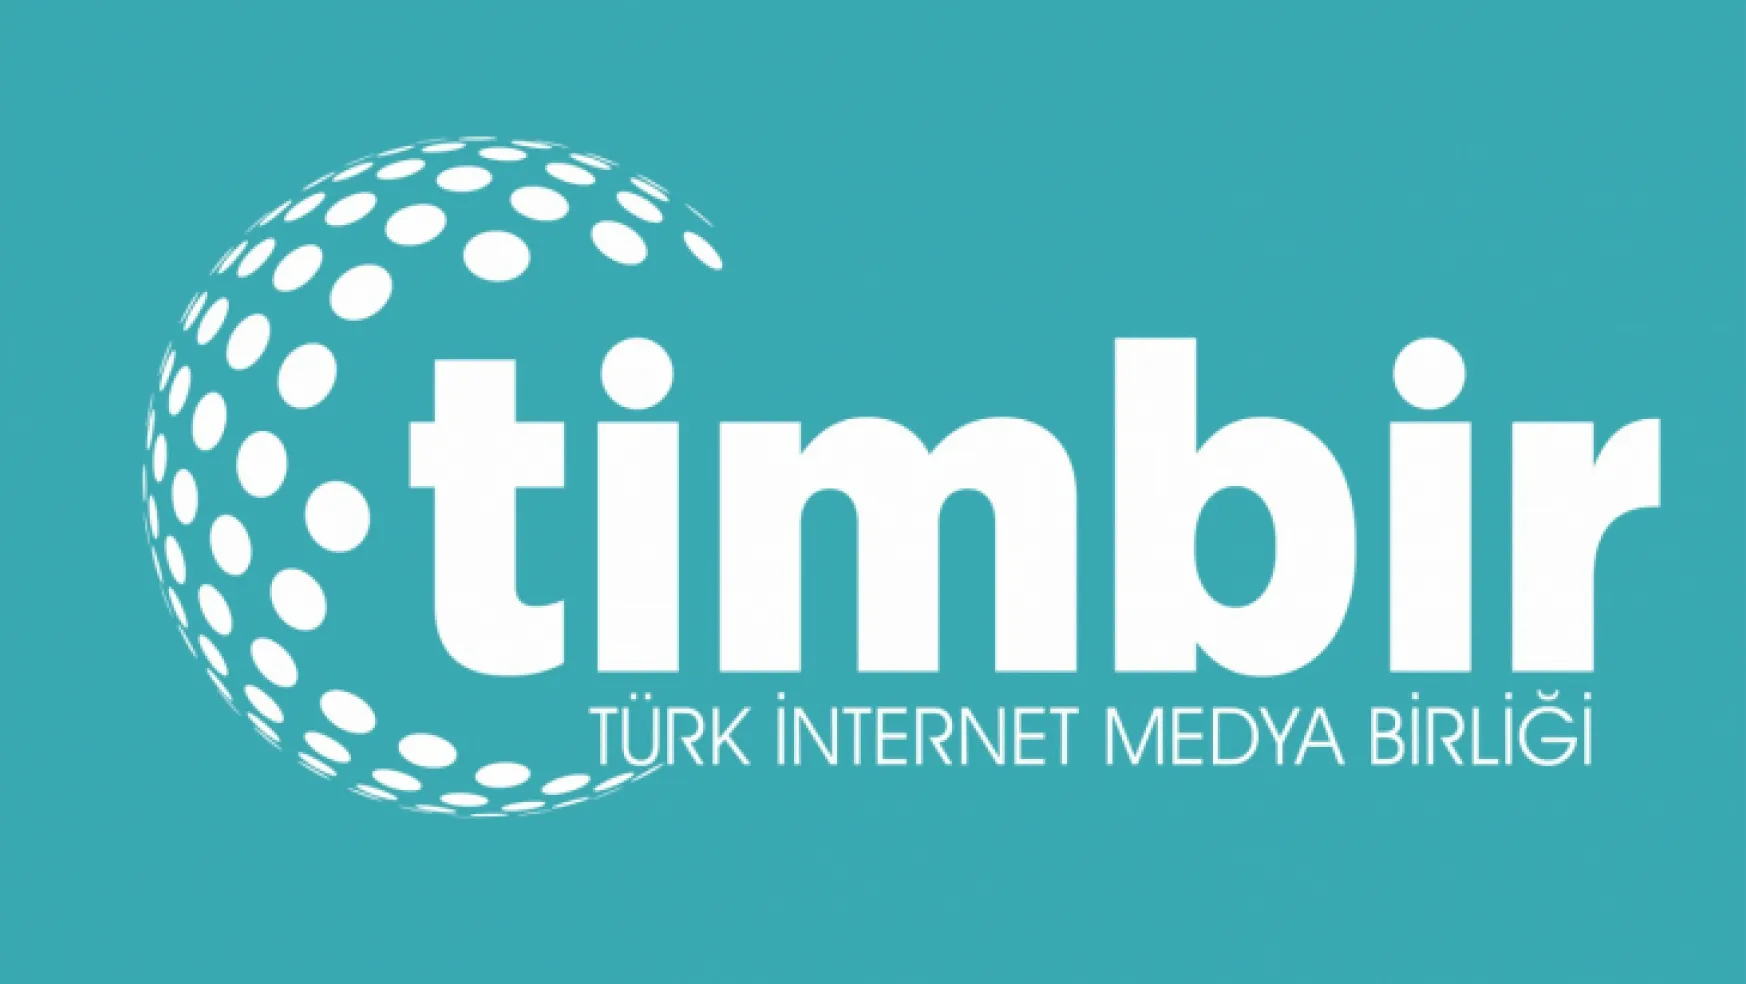 Türk İnternet Medya Birliğine (TİMBİR) bağlı, 7 Ülke 81 il kurucusu Ankara'da